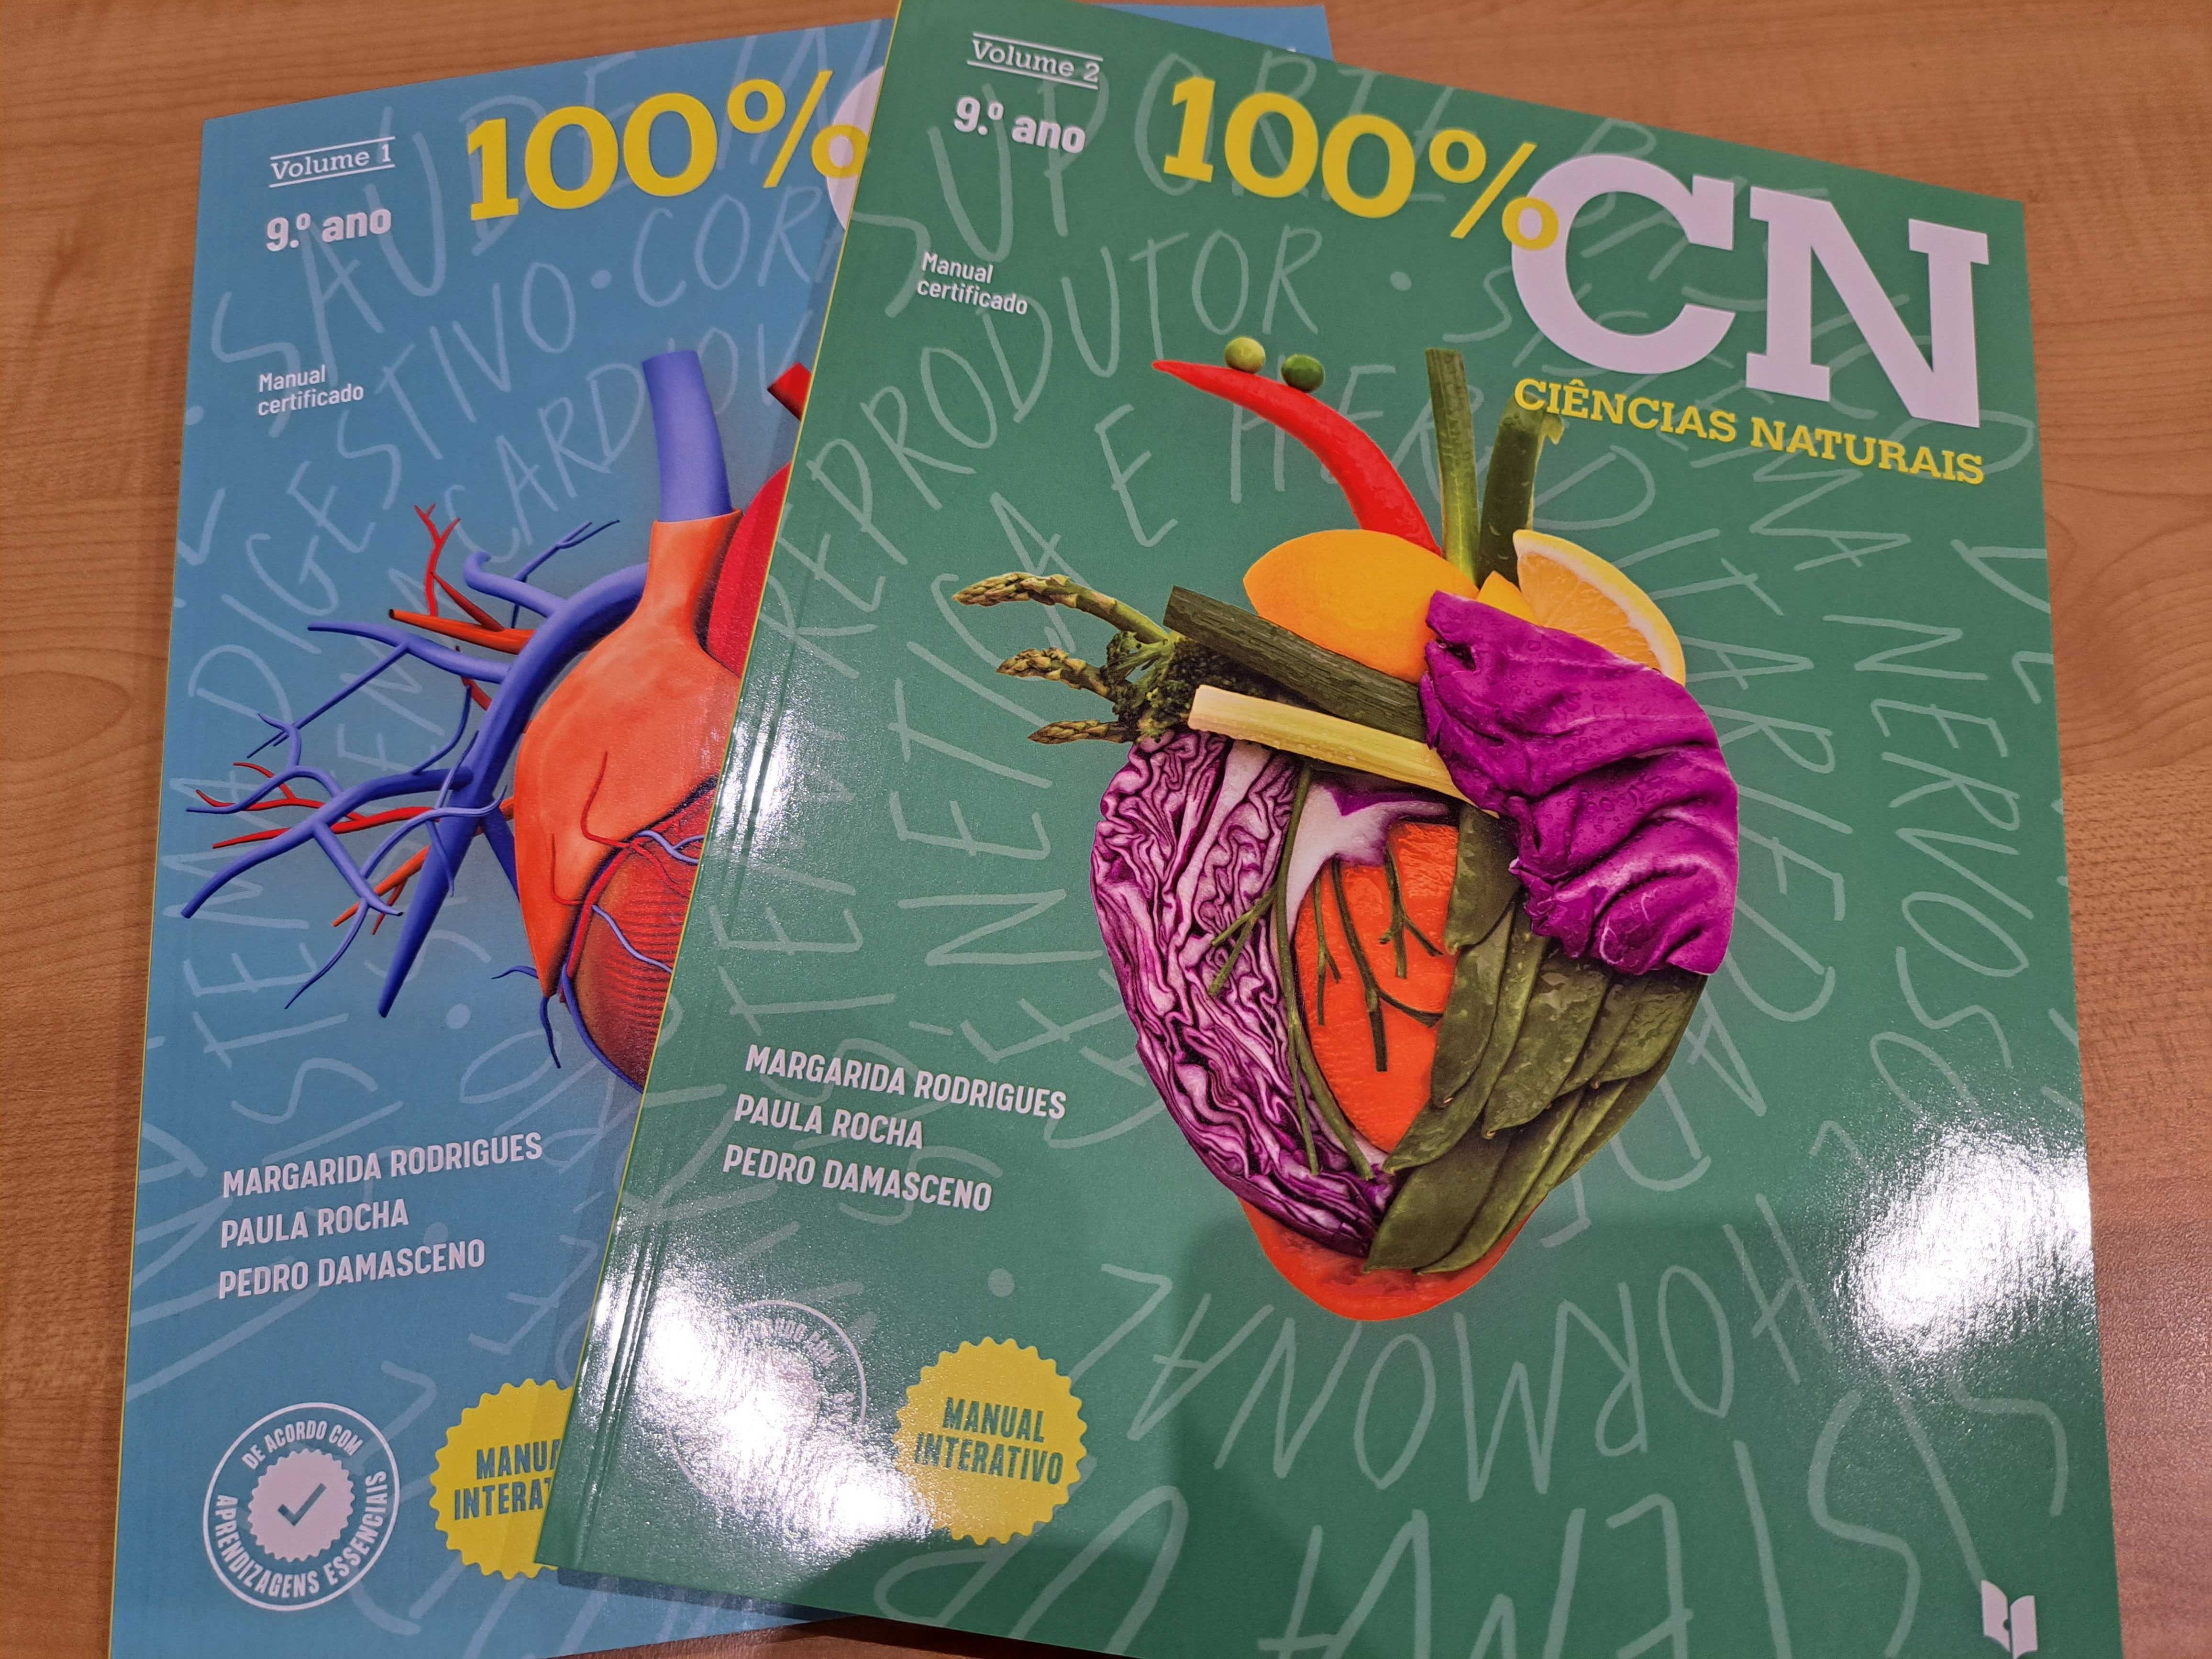 Manual 100% CN - Ciências Naturais